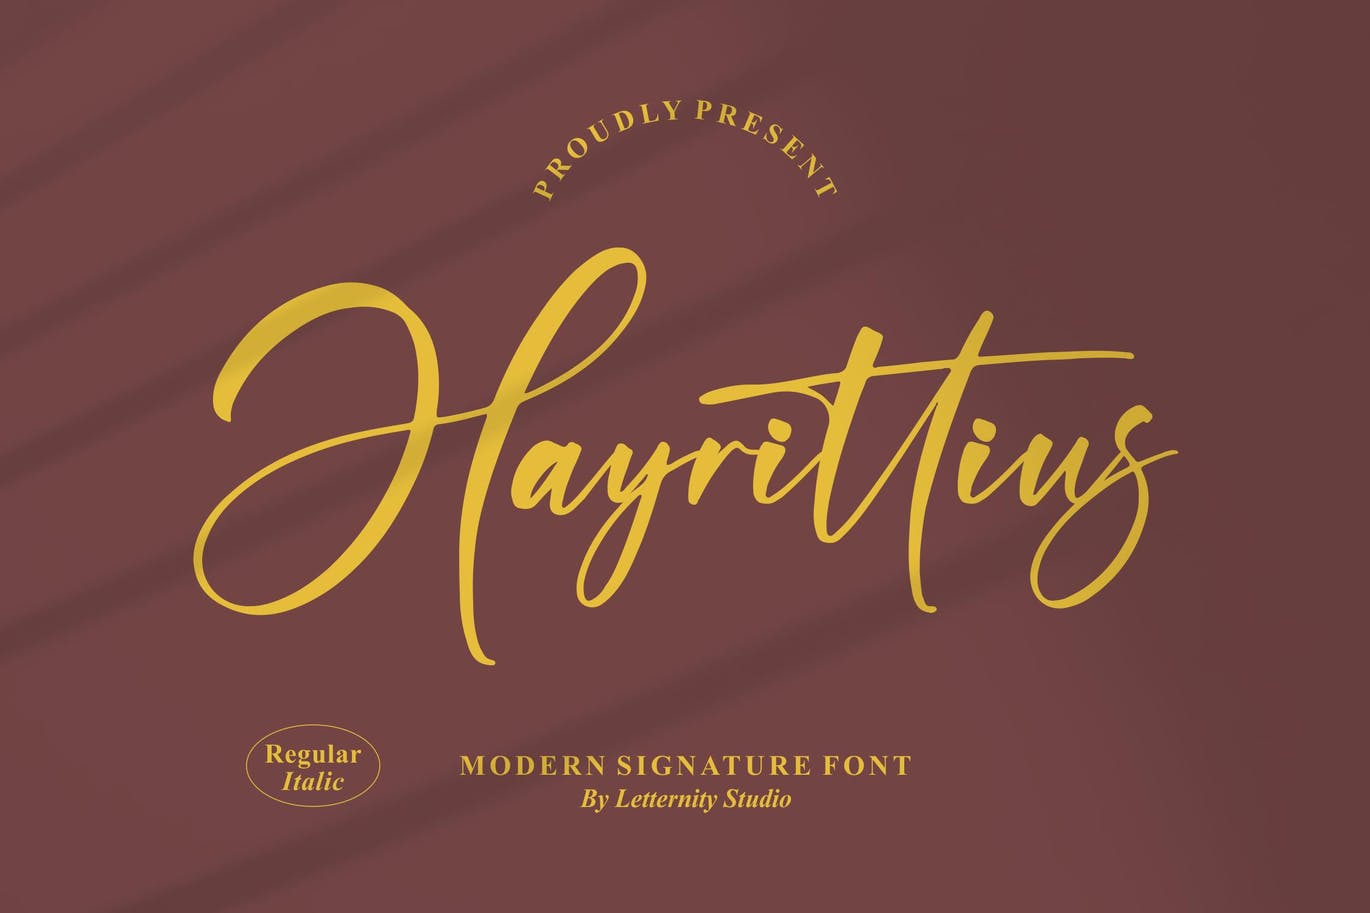 艺术个性签名字体素材 Hayrittius Signature Font 设计素材 第12张